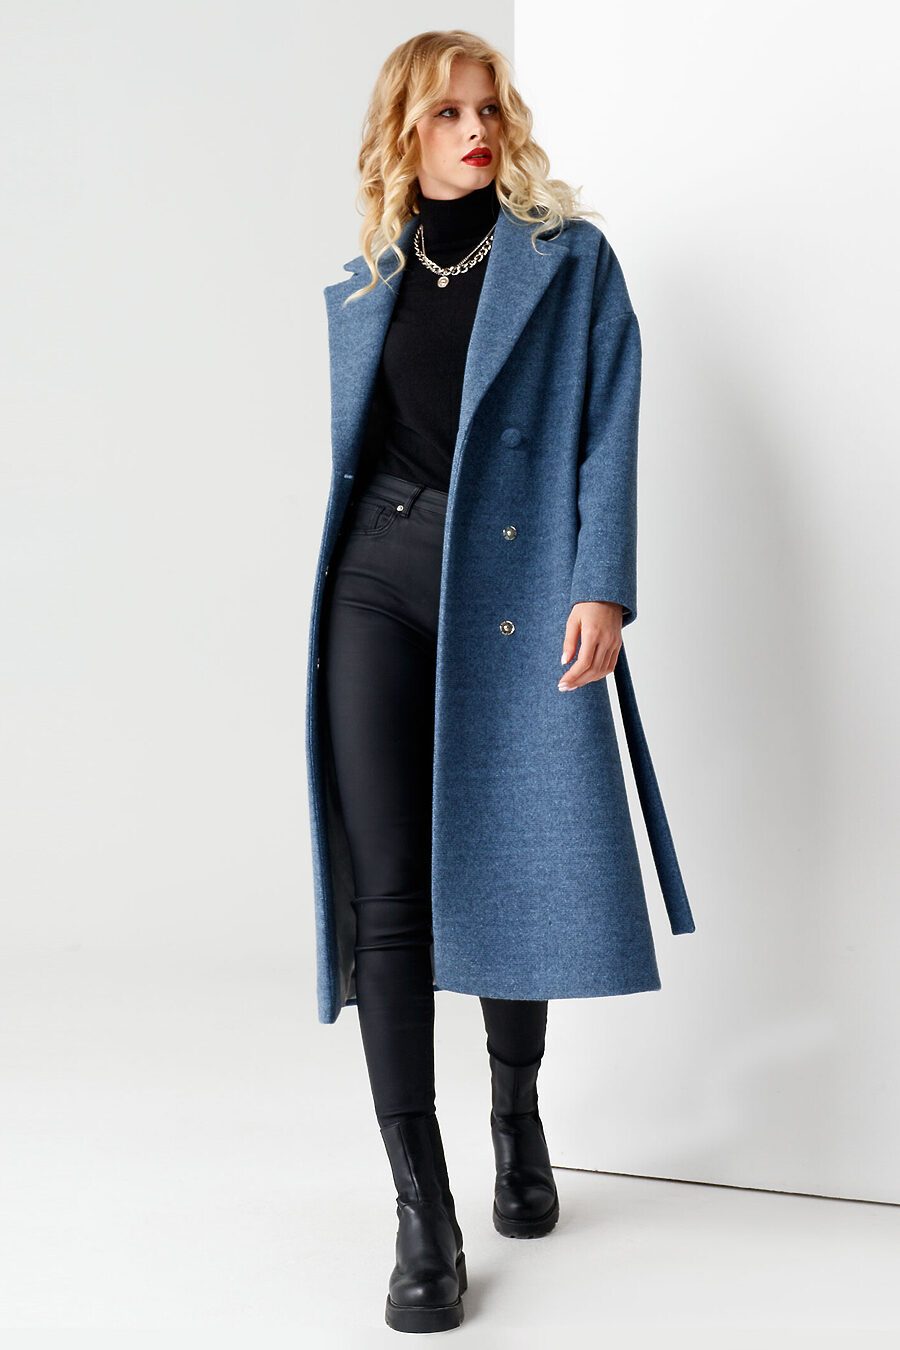 Пальто для женщин PANDA 708639 купить оптом от производителя. Совместная покупка женской одежды в OptMoyo